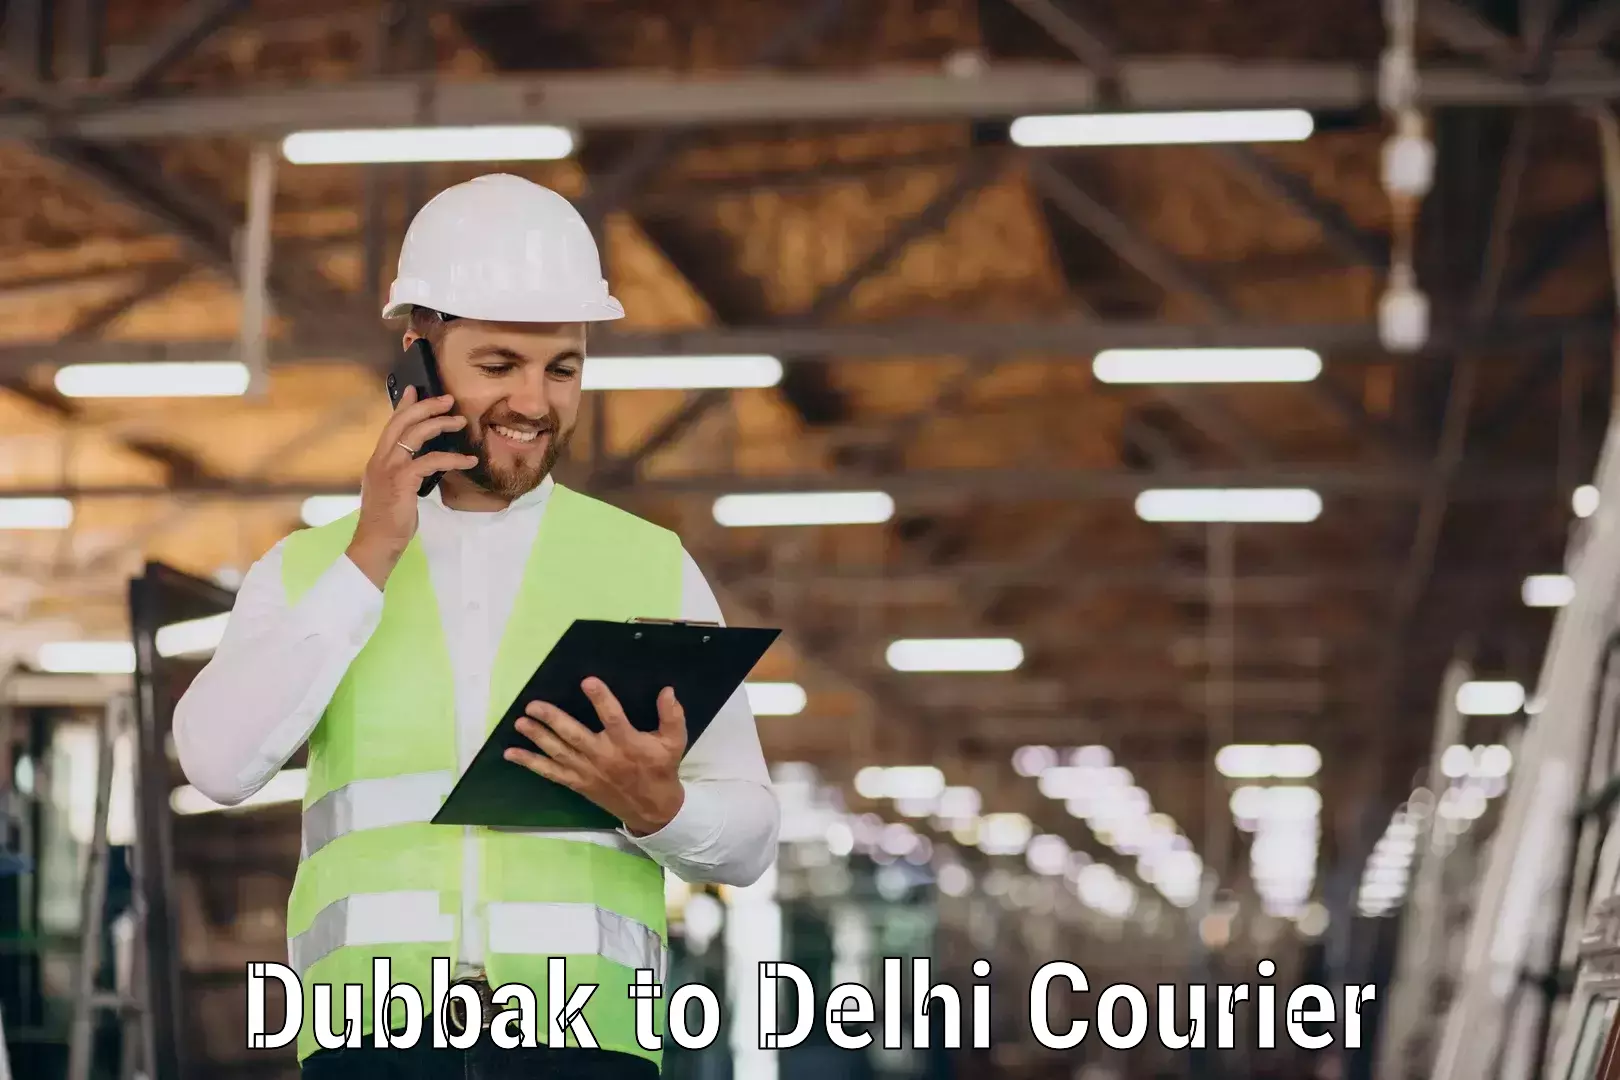 Speedy delivery service Dubbak to Jamia Millia Islamia New Delhi